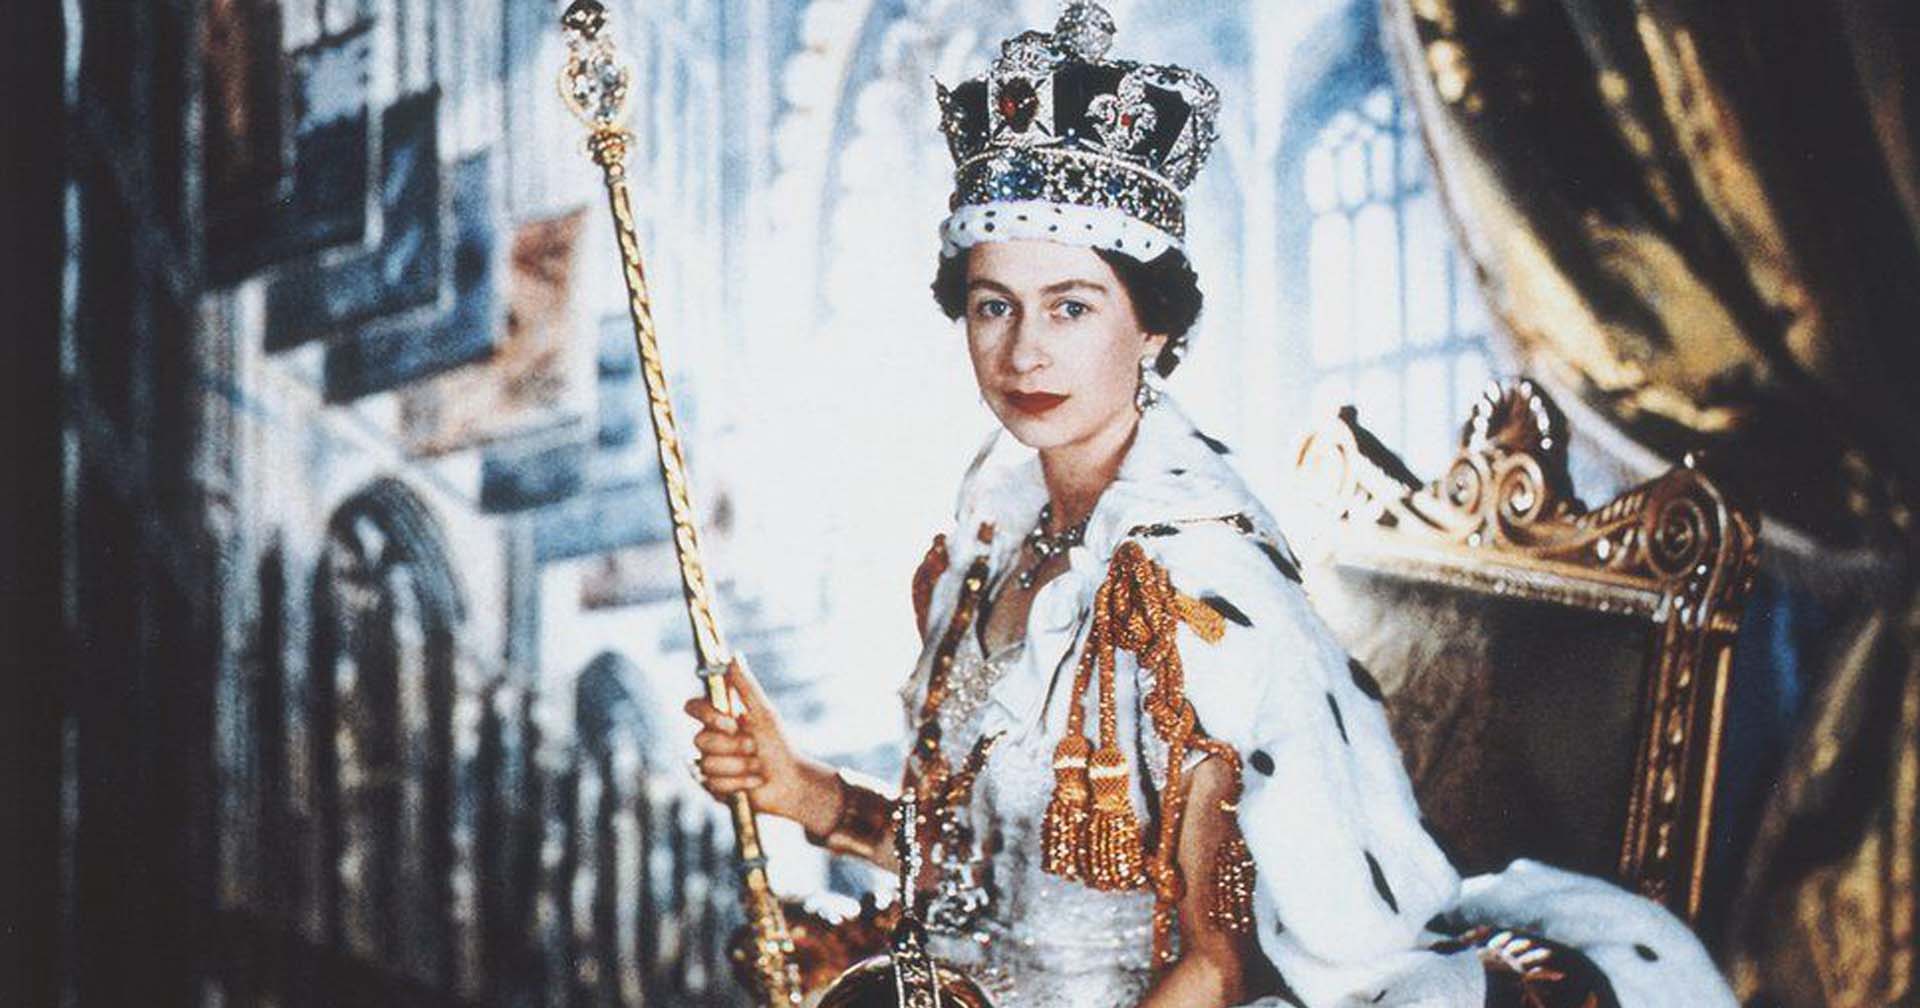 สมเด็จพระราชินีนาถเอลิซาเบธที่ 2 หนึ่งในประมุขที่ครองราชย์ยาวนานที่สุดในโลก